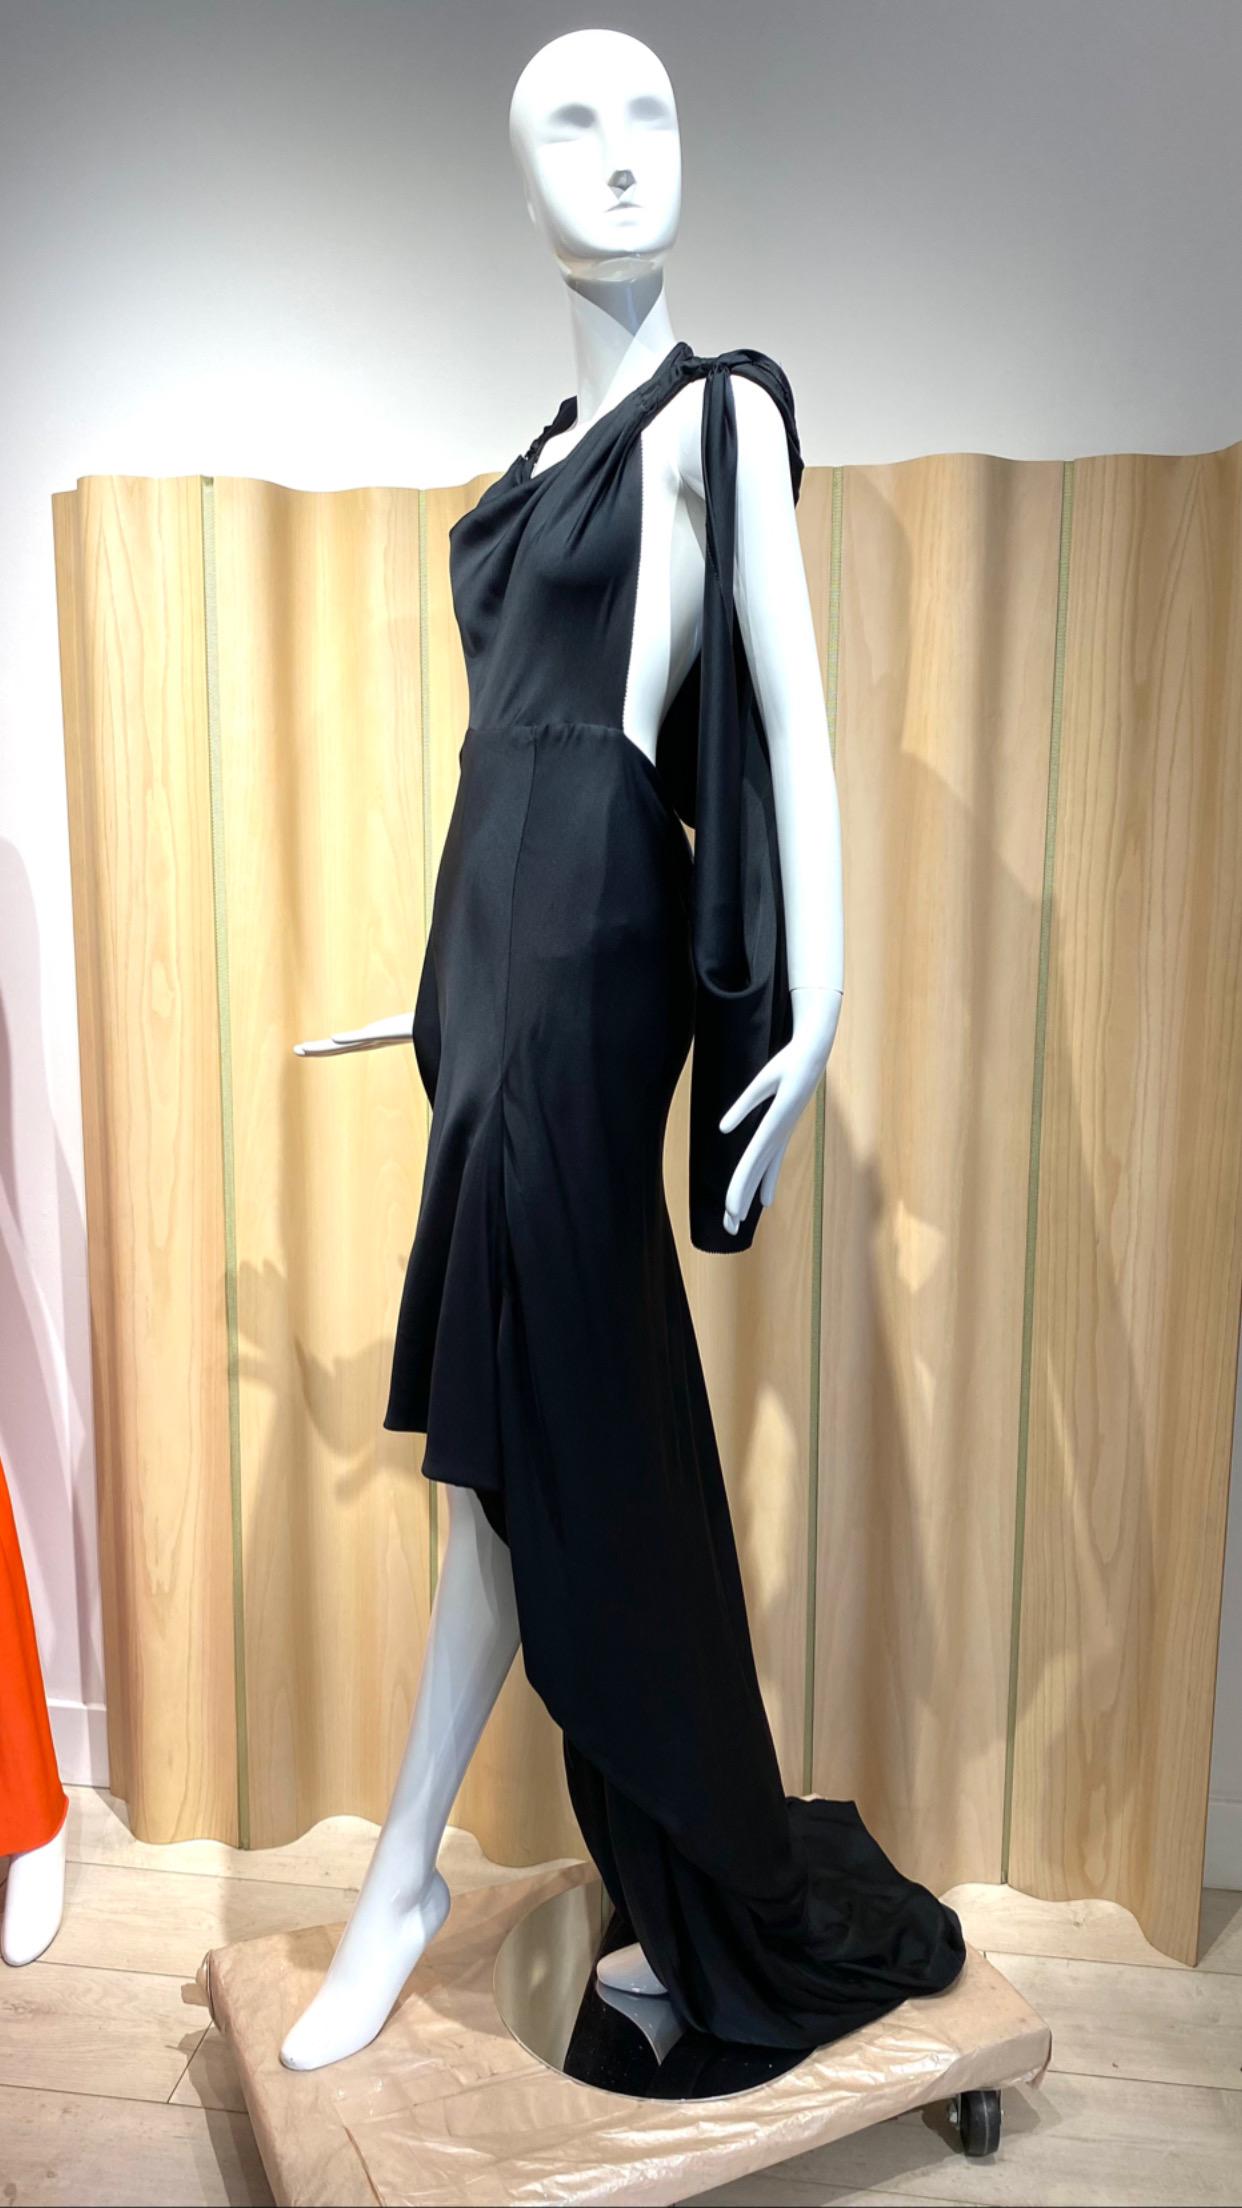 Gucci by Tom Ford 2011 Laufstegkleid aus schwarzer Seiden-Charmeuse im griechischen Stil.
Passform Größe 4-6
